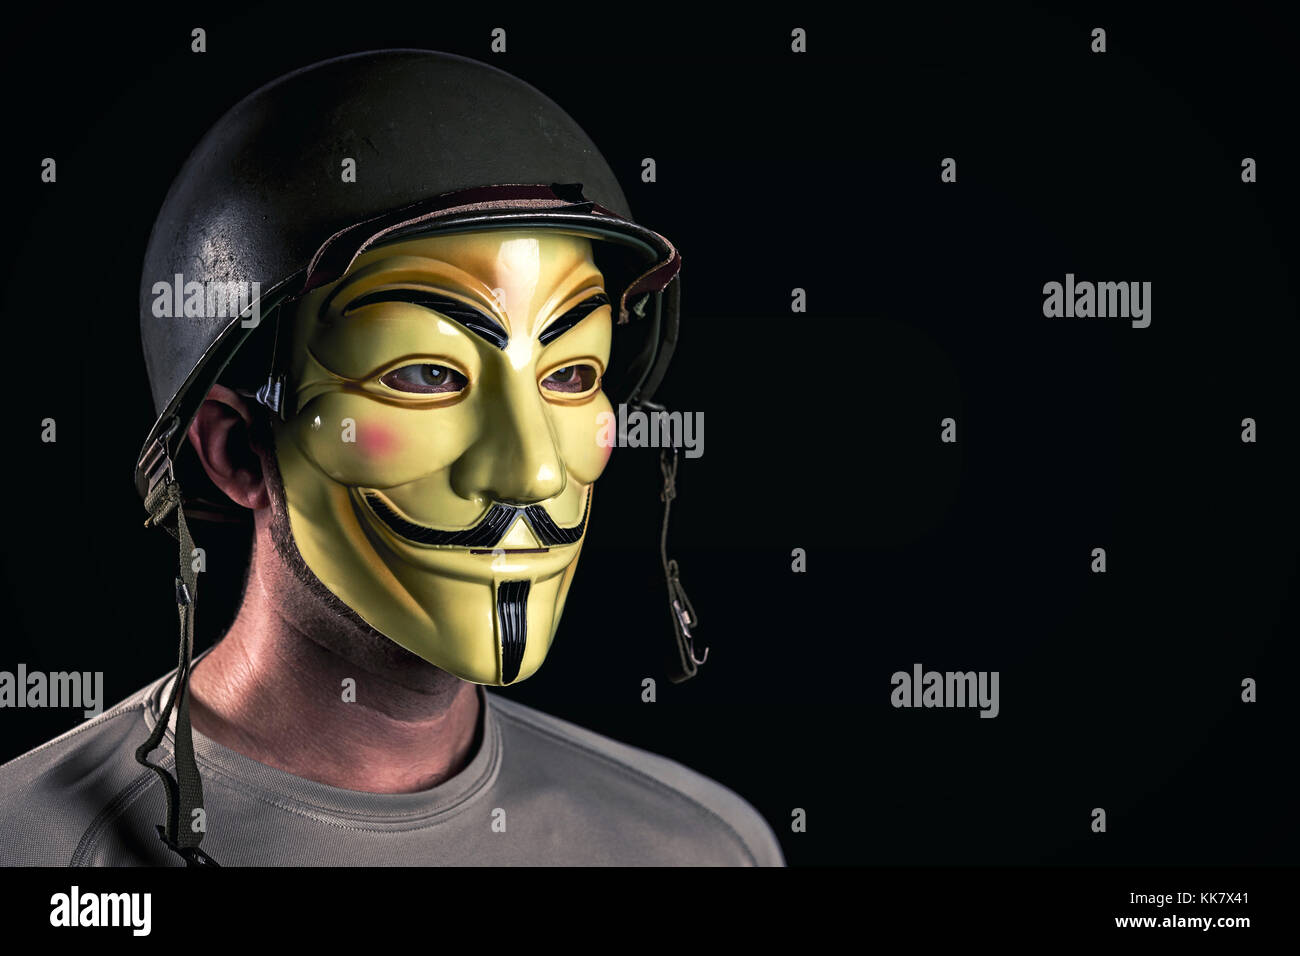 Mailand, Italien, November 2017: Hacker Verschleiß anonymus Maske und usa Armee Helm im Dunkeln. editorial Foto. Stockfoto